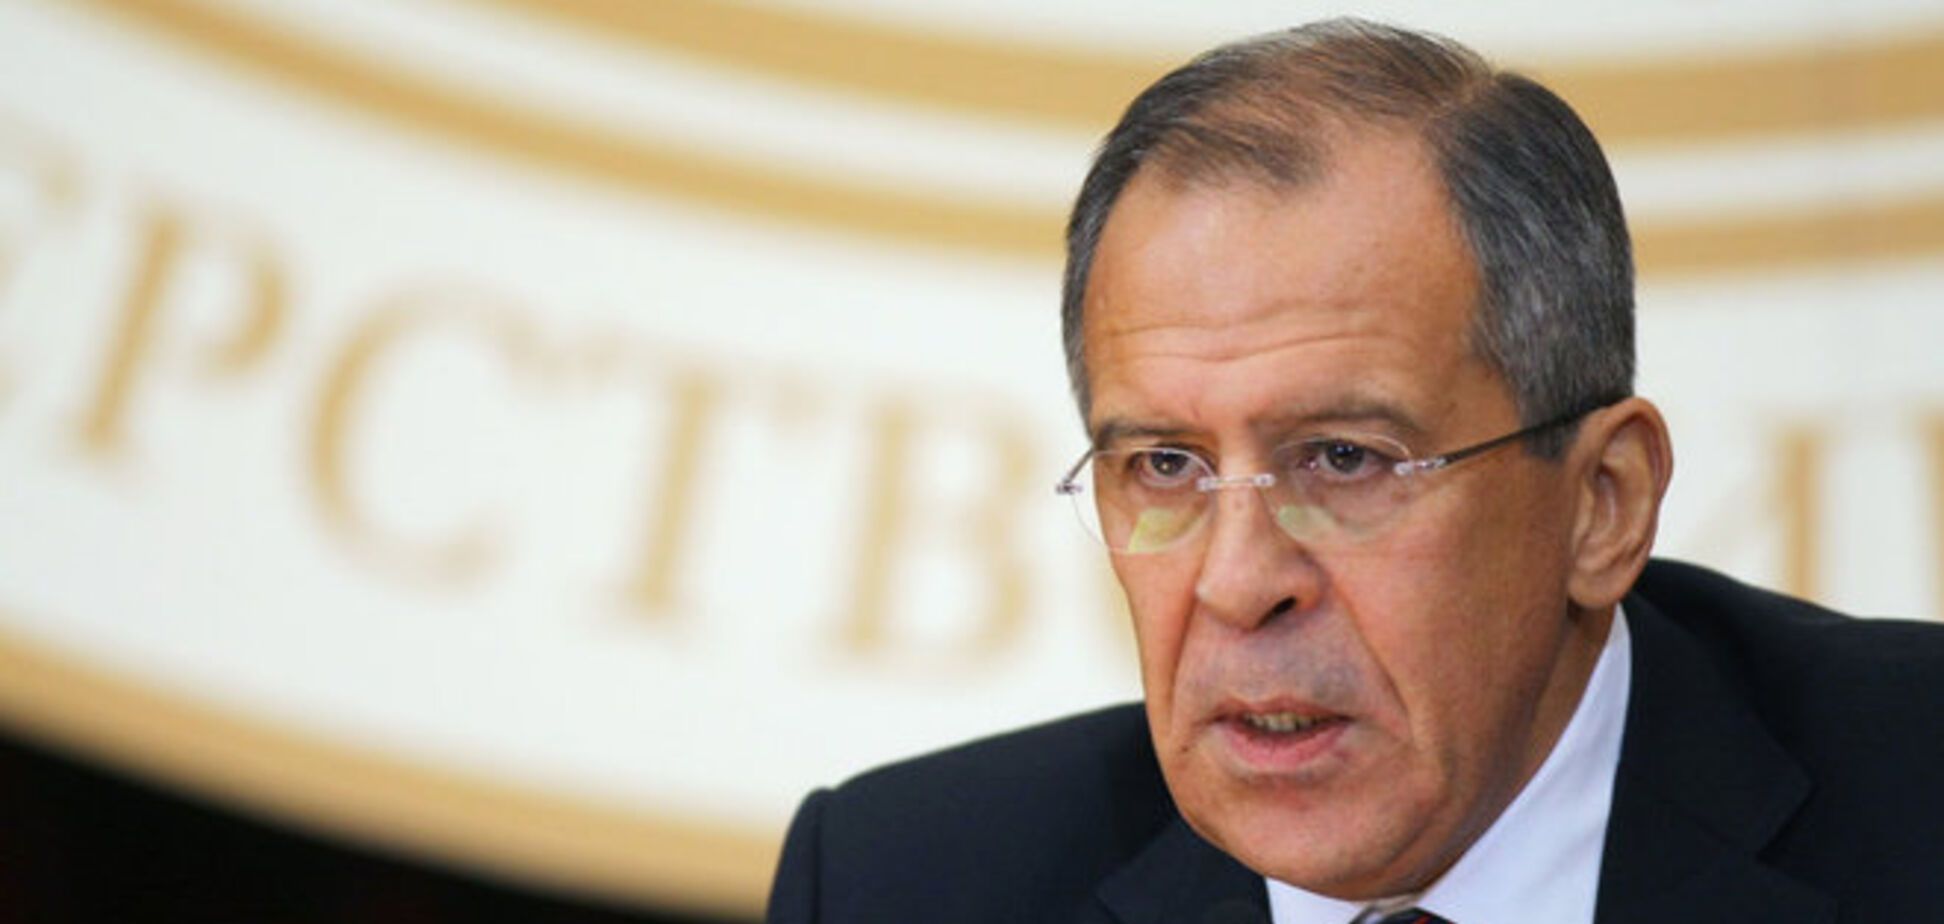 МИД РФ пригрозил ответом на санкции из 'политического зазеркалья'